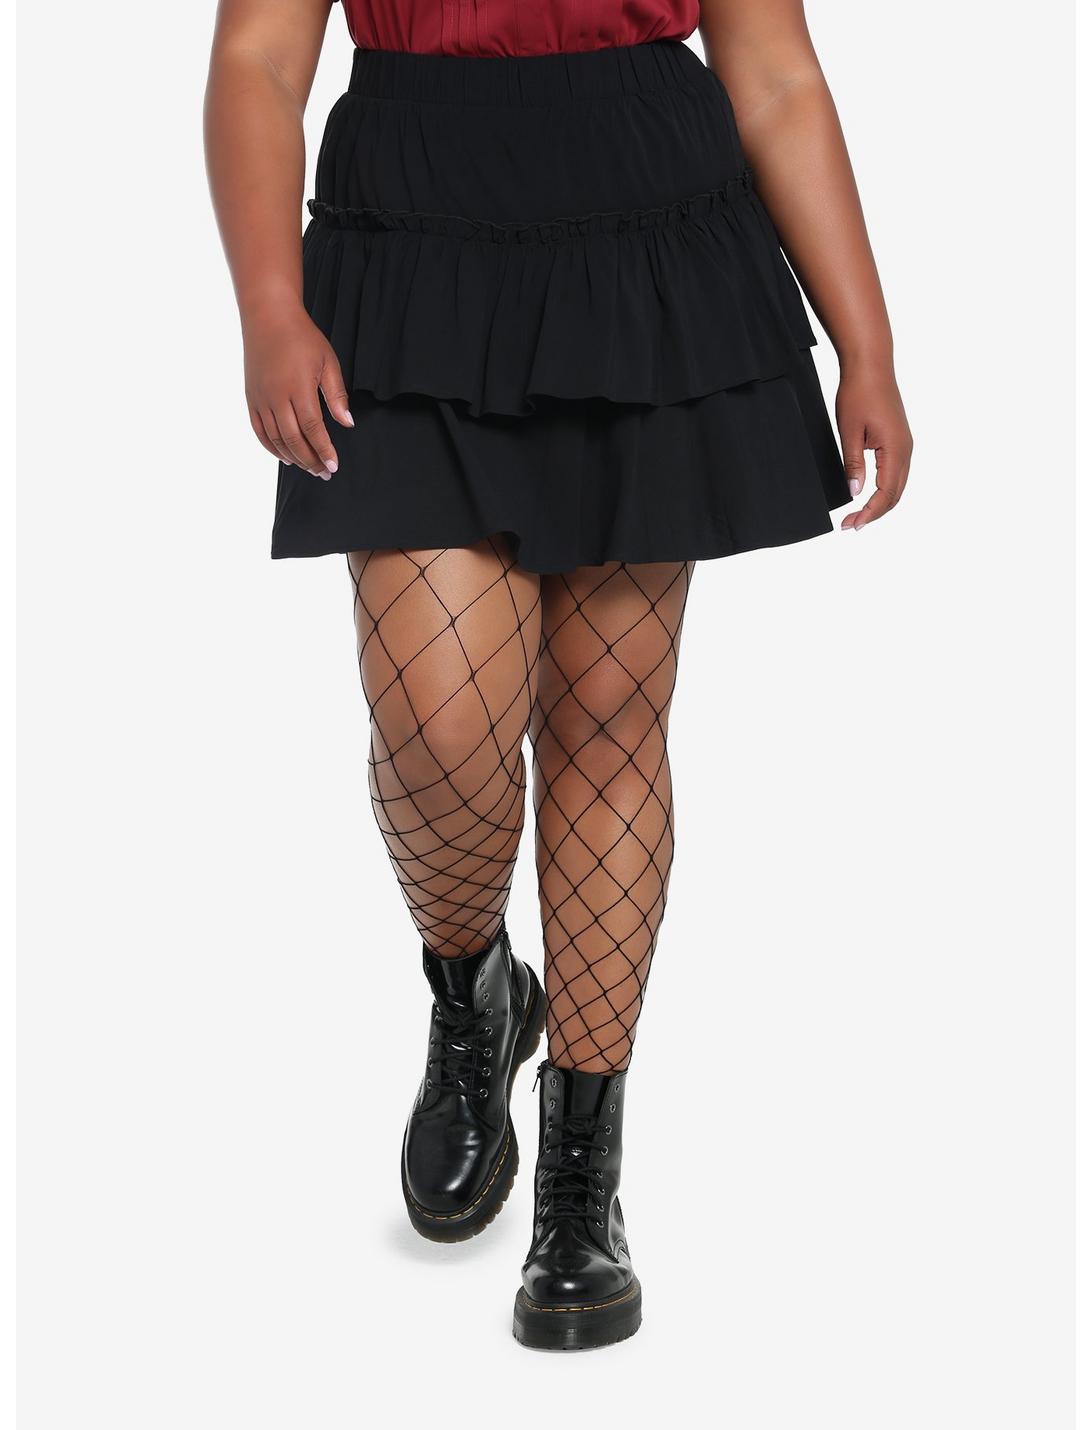 Black Ruffles Tiered Mini Skirt Plus Size, MULTI, hi-res